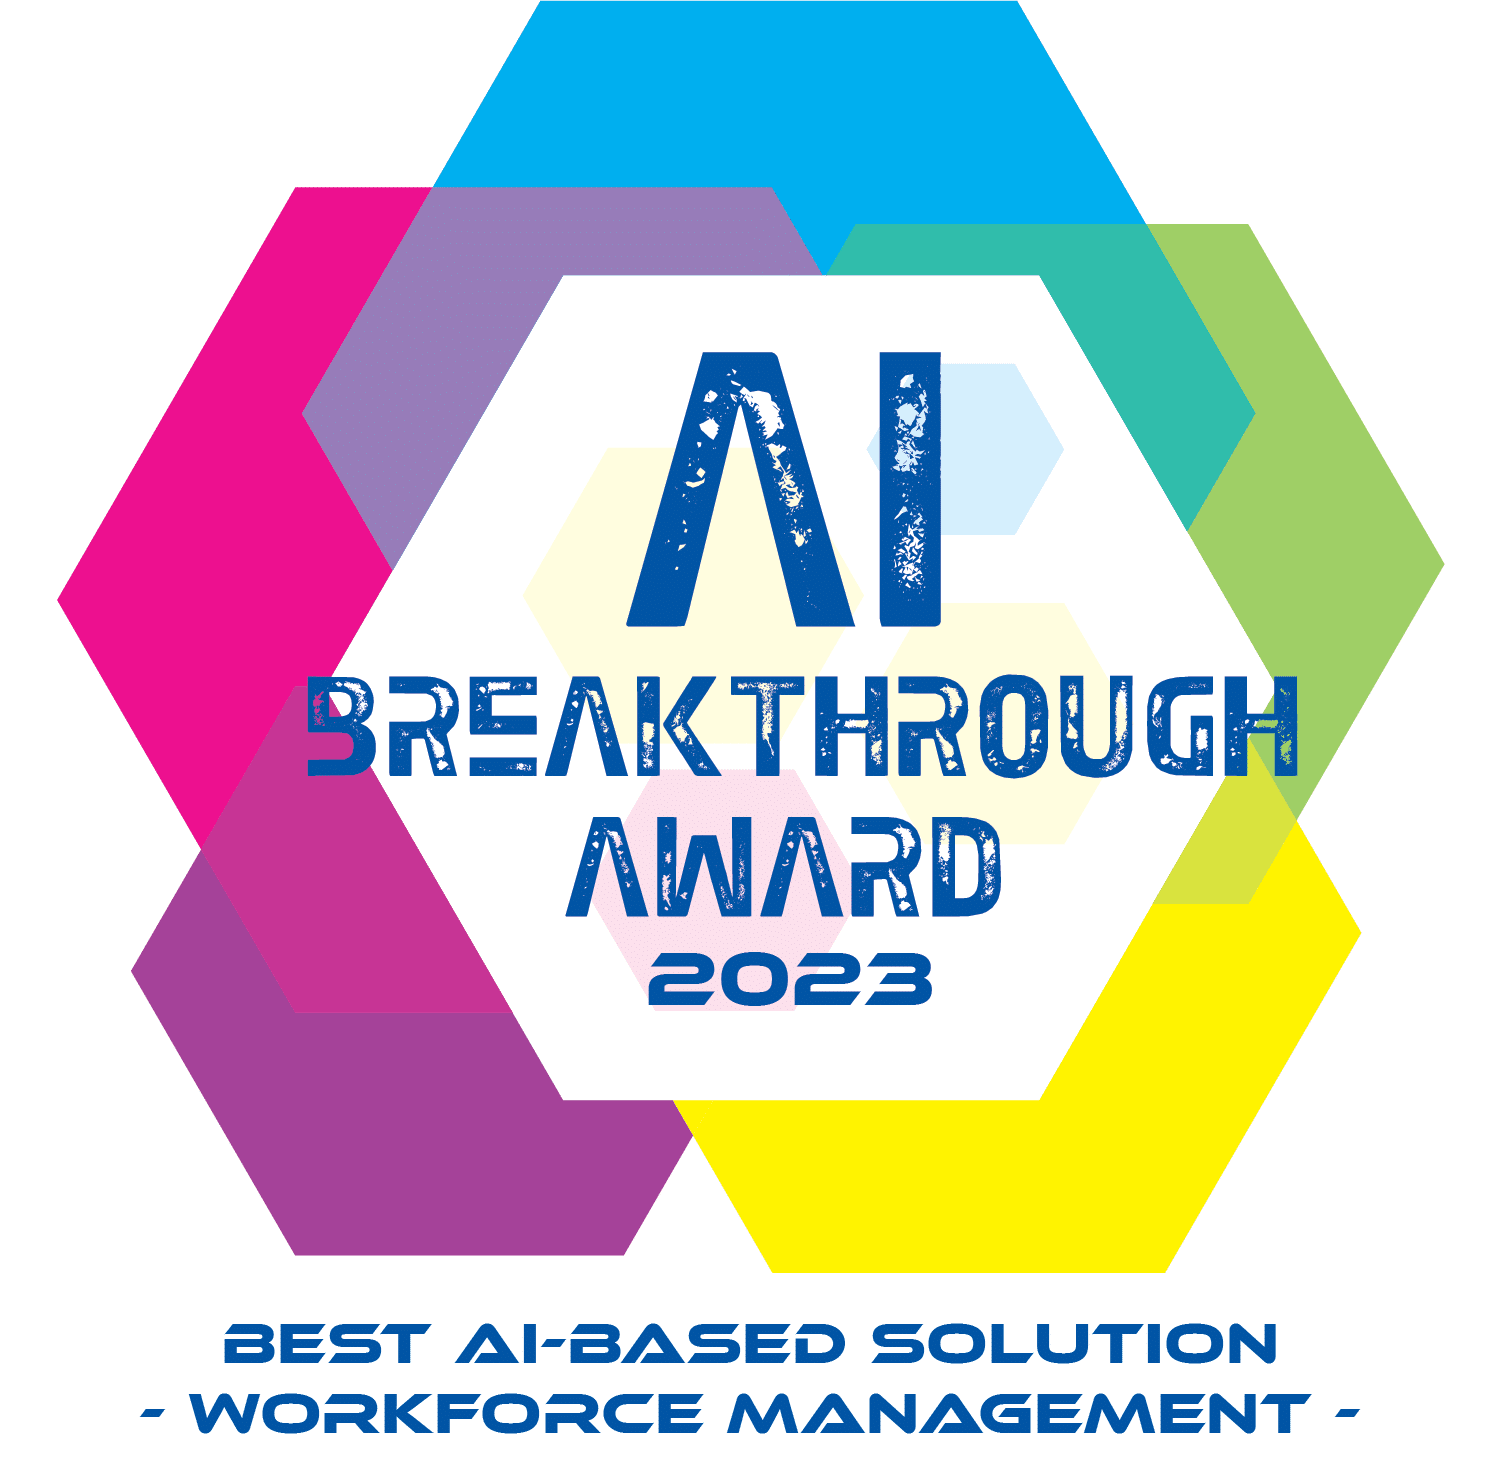 AI Breakthrough Awards 2023 Legionco